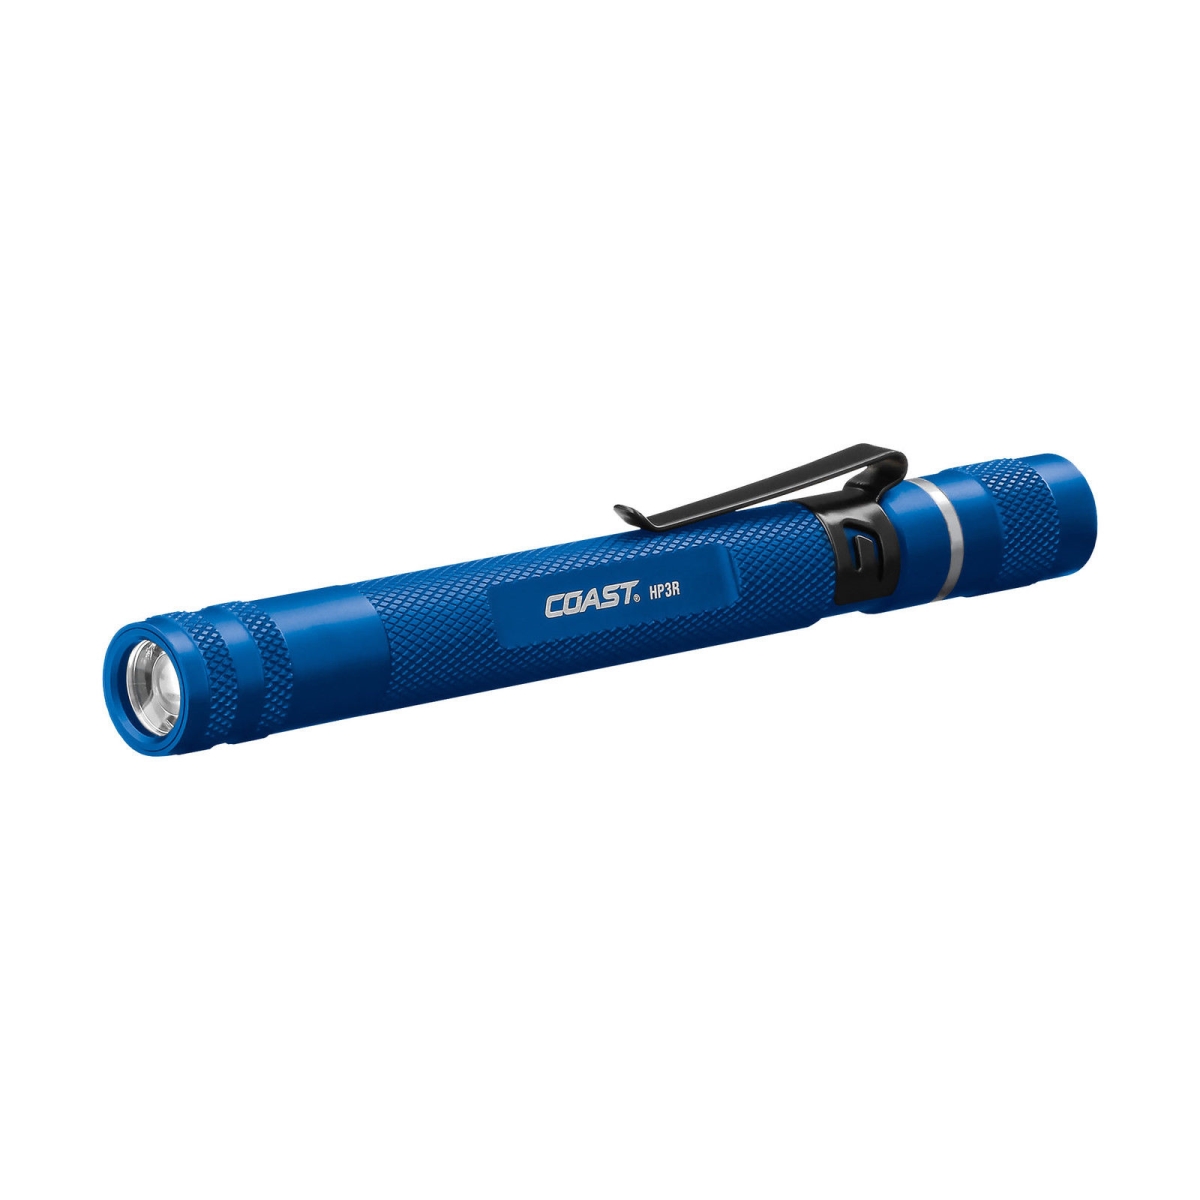 Cst-21518 Rechargeable Focusing Penlight, Blue